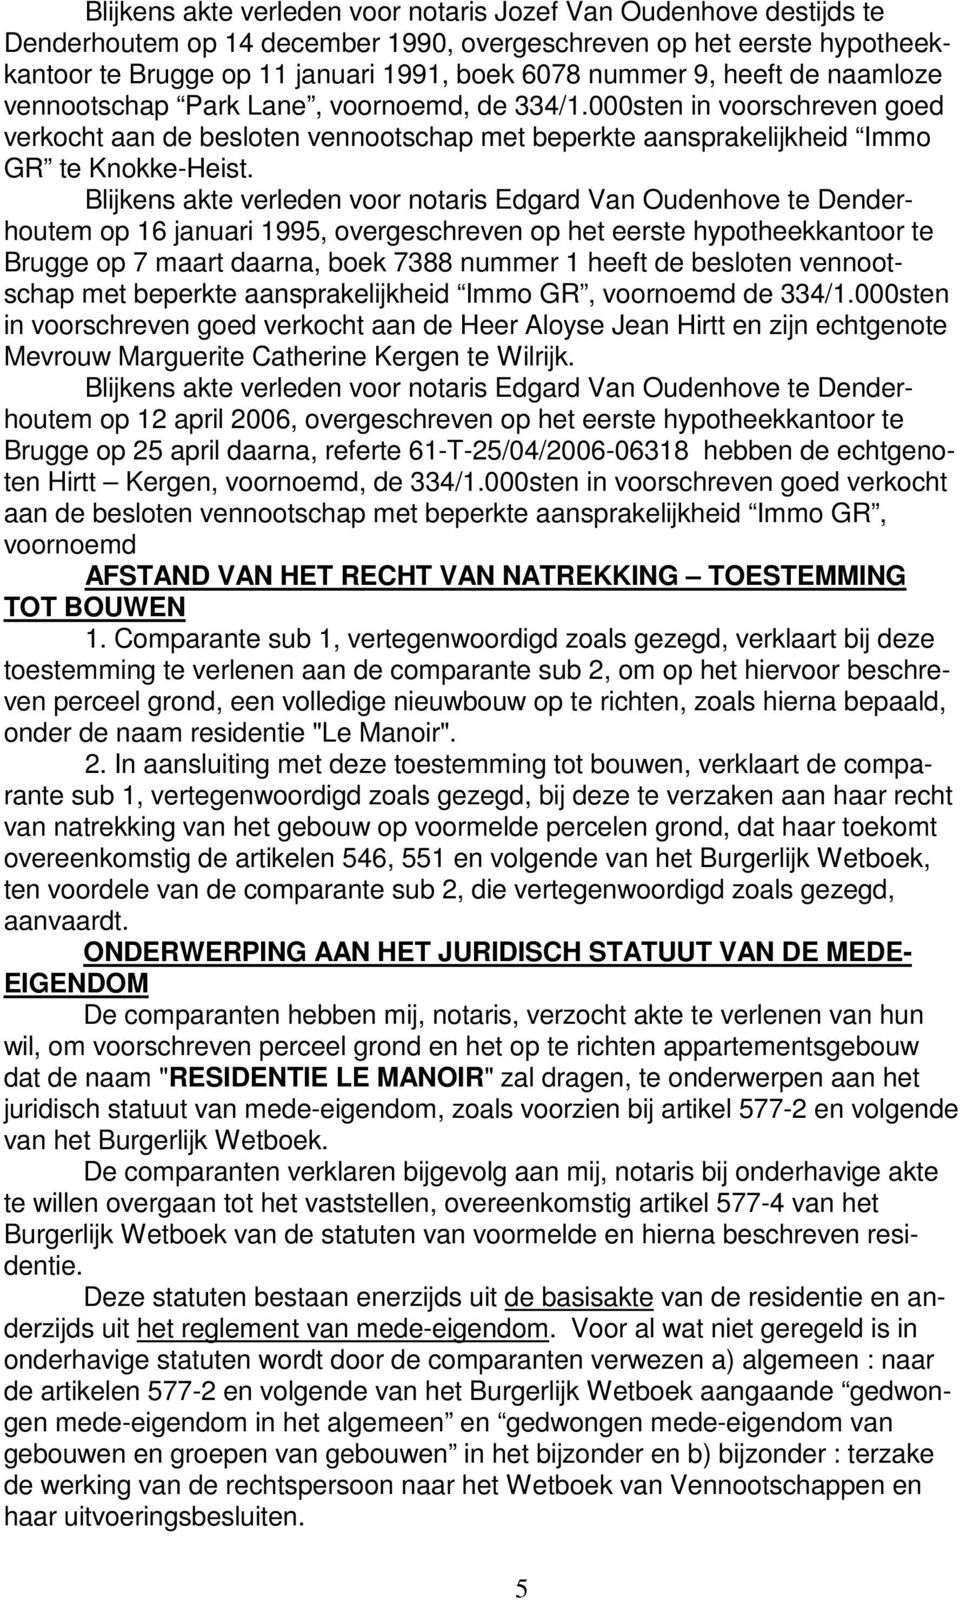 Blijkens akte verleden voor notaris Edgard Van Oudenhove te Denderhoutem op 16 januari 1995, overgeschreven op het eerste hypotheekkantoor te Brugge op 7 maart daarna, boek 7388 nummer 1 heeft de